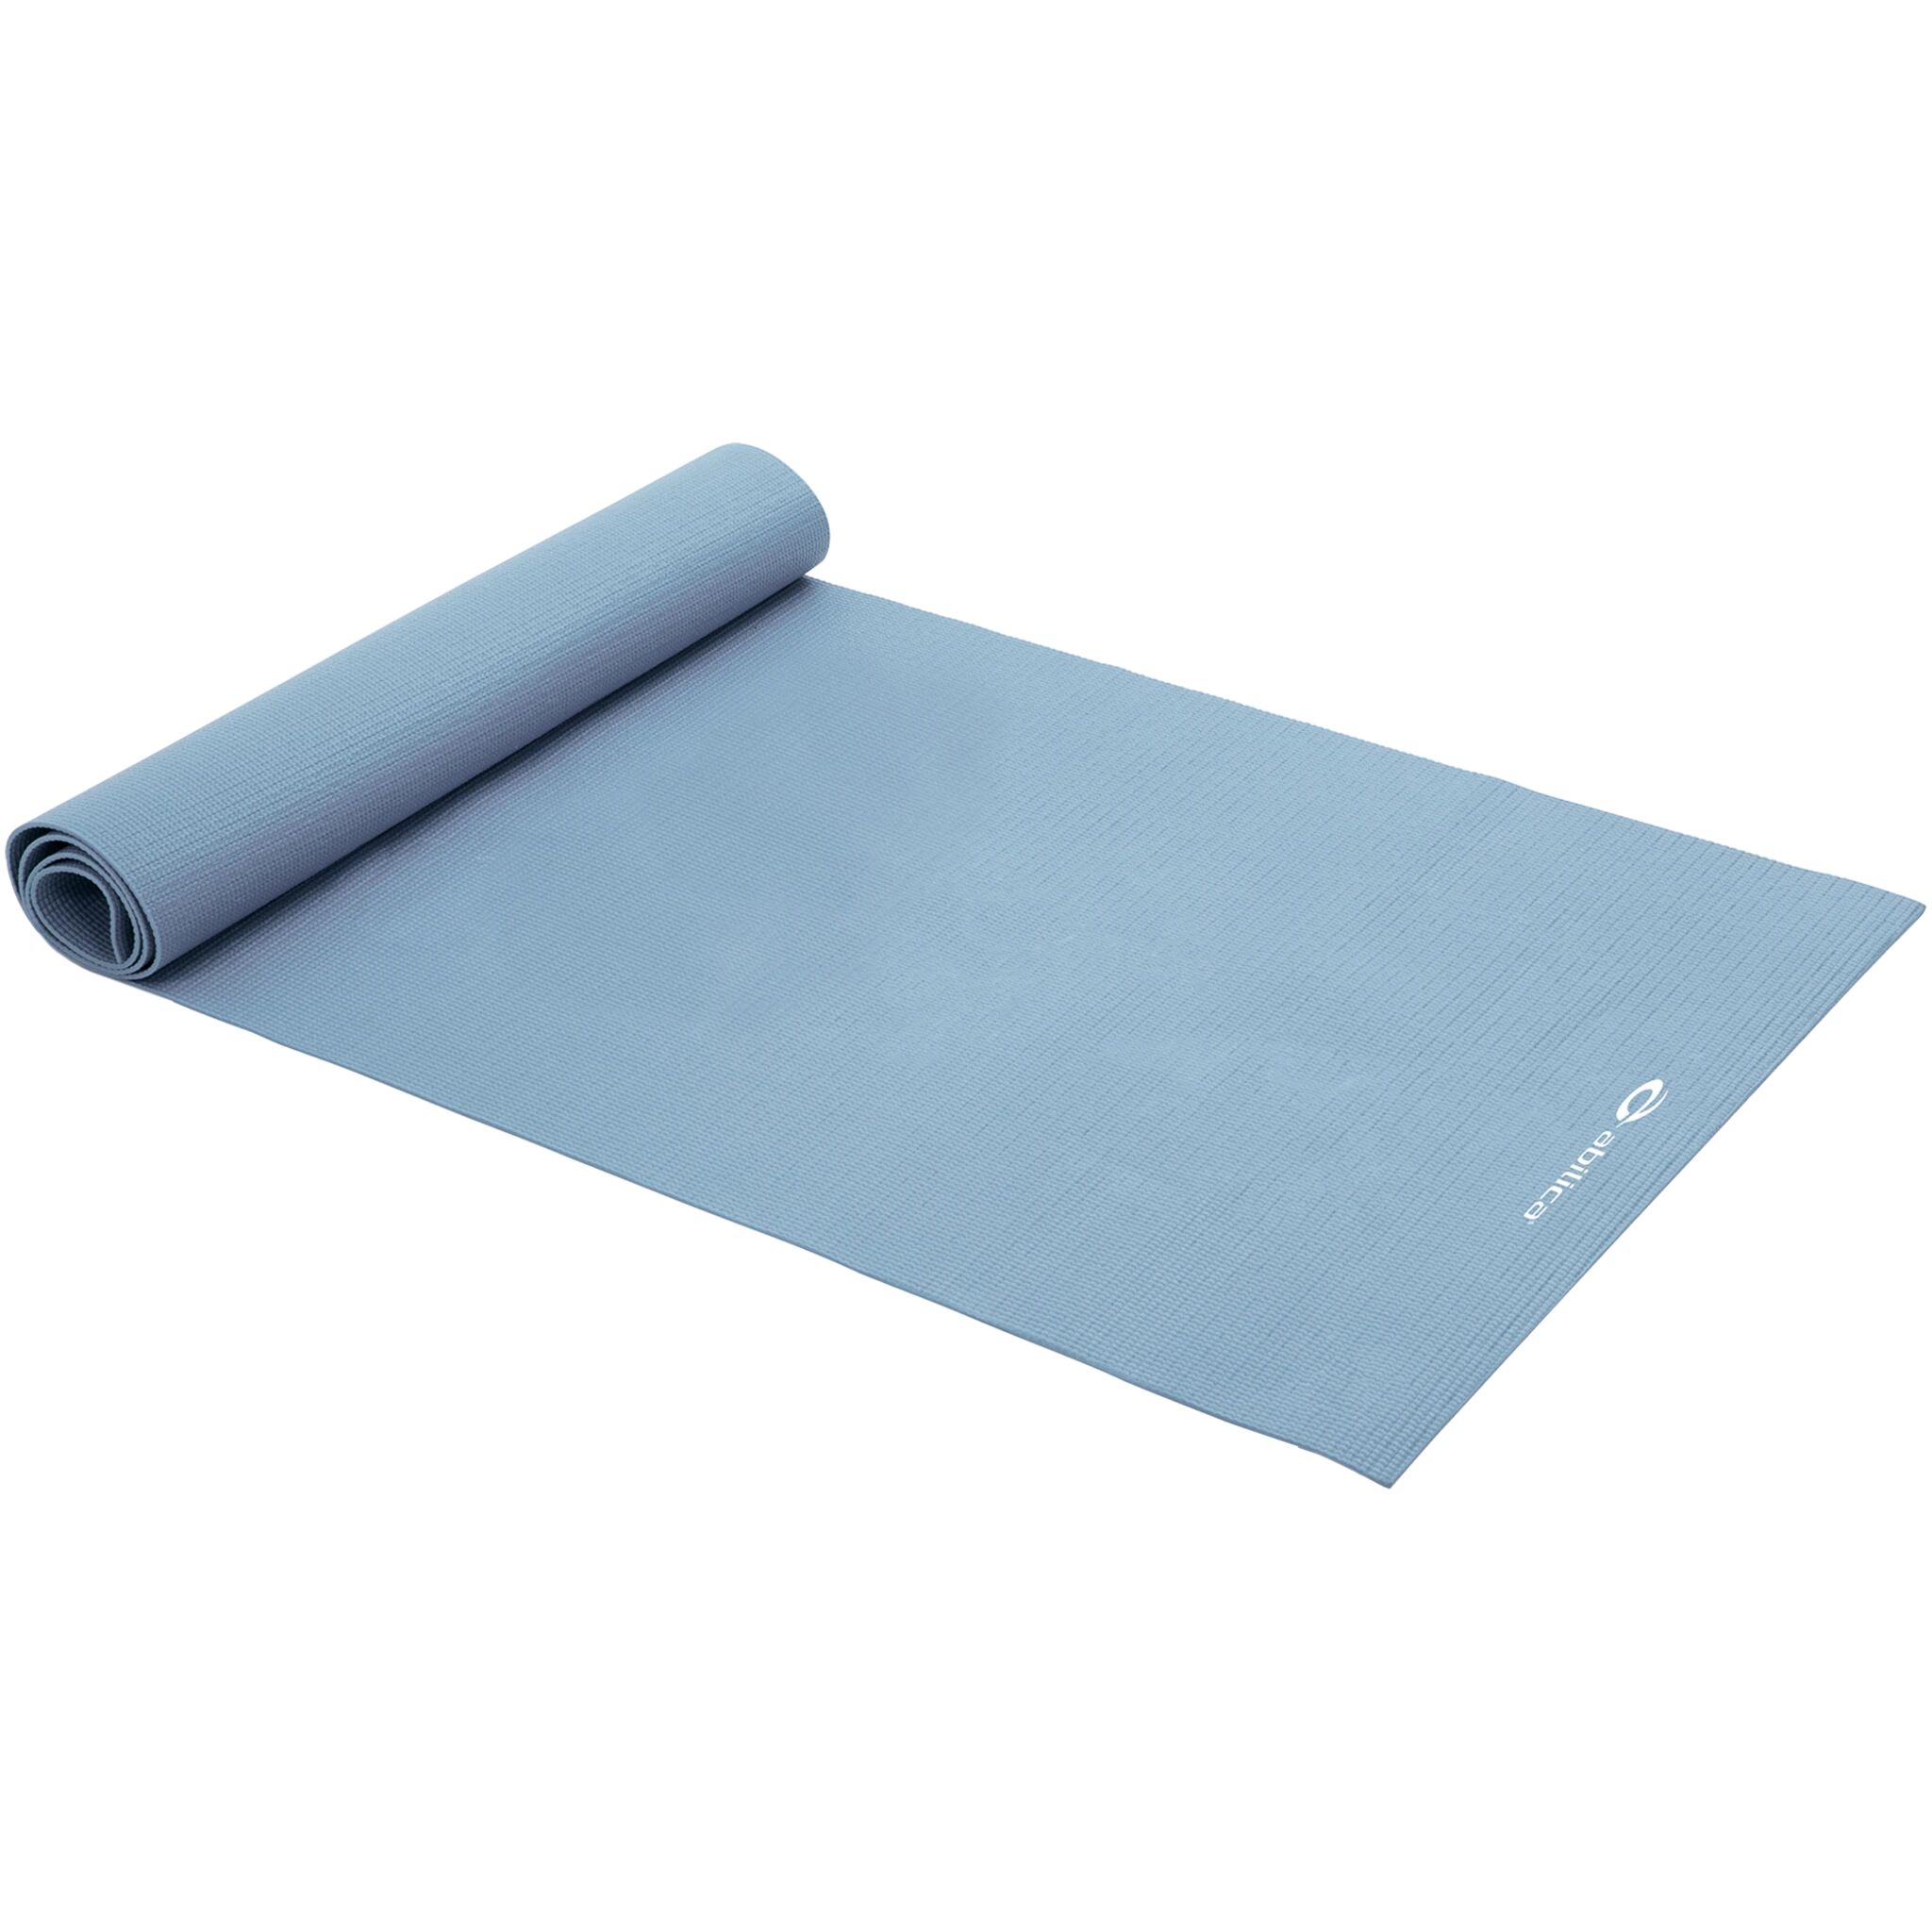 Abilica Yogamatte 173 x 61 cm One Size blue